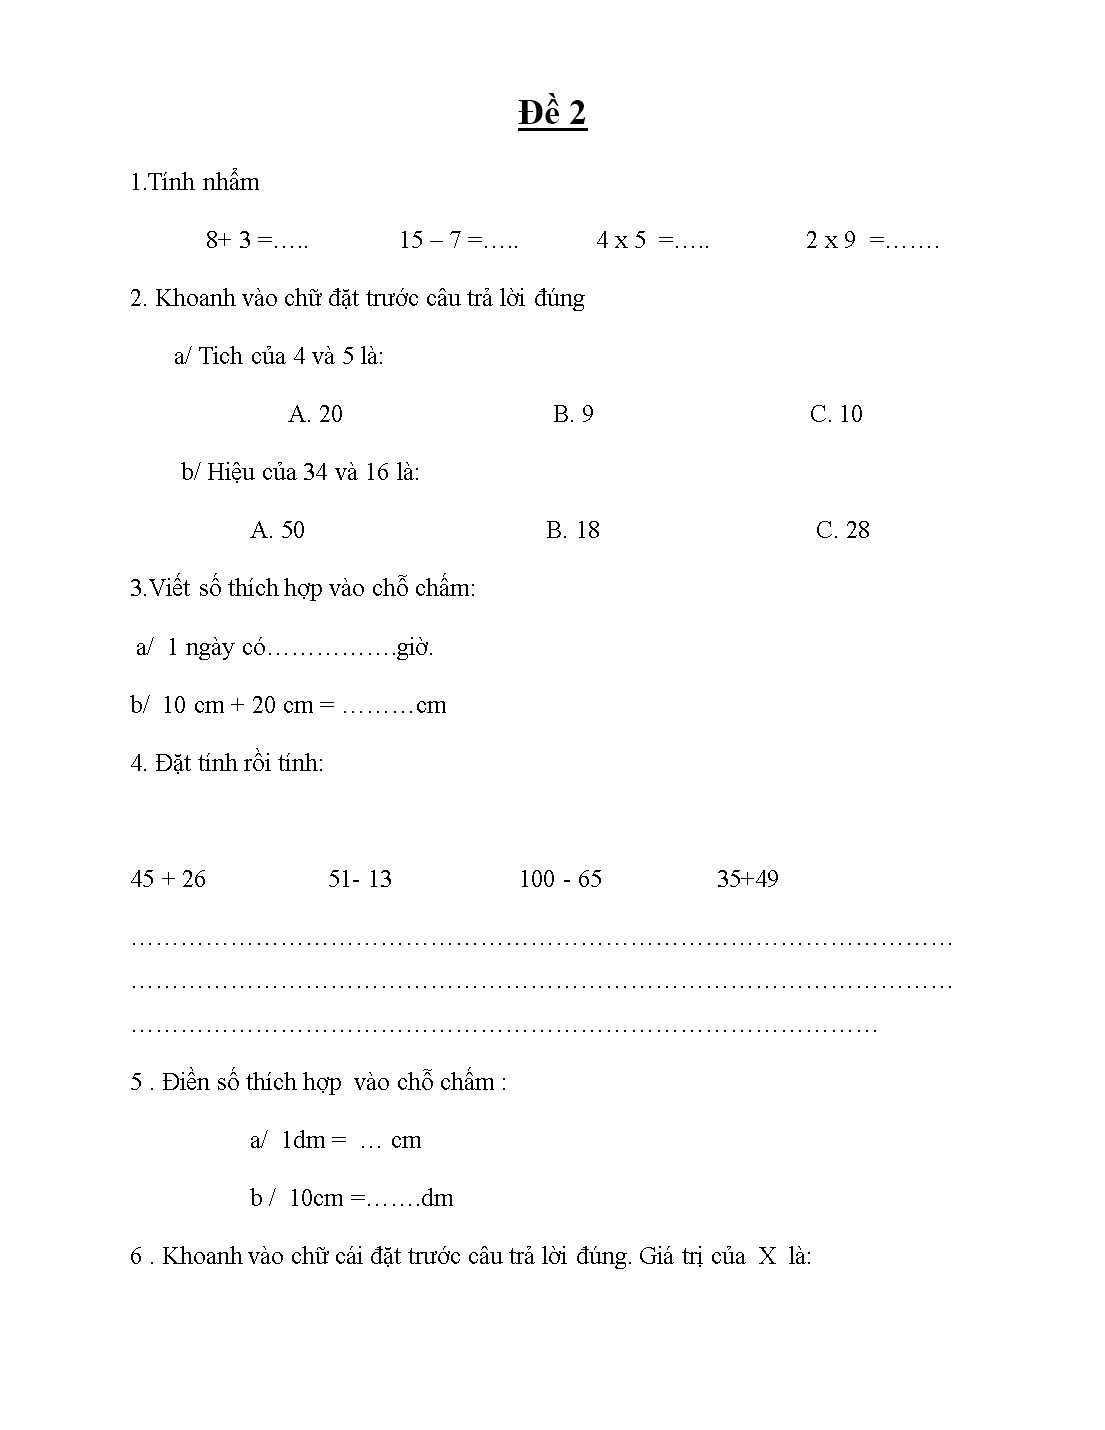 Đề cương ôn tập môn Toán lớp 2 - Trường tiểu học Bách Thuận trang 9